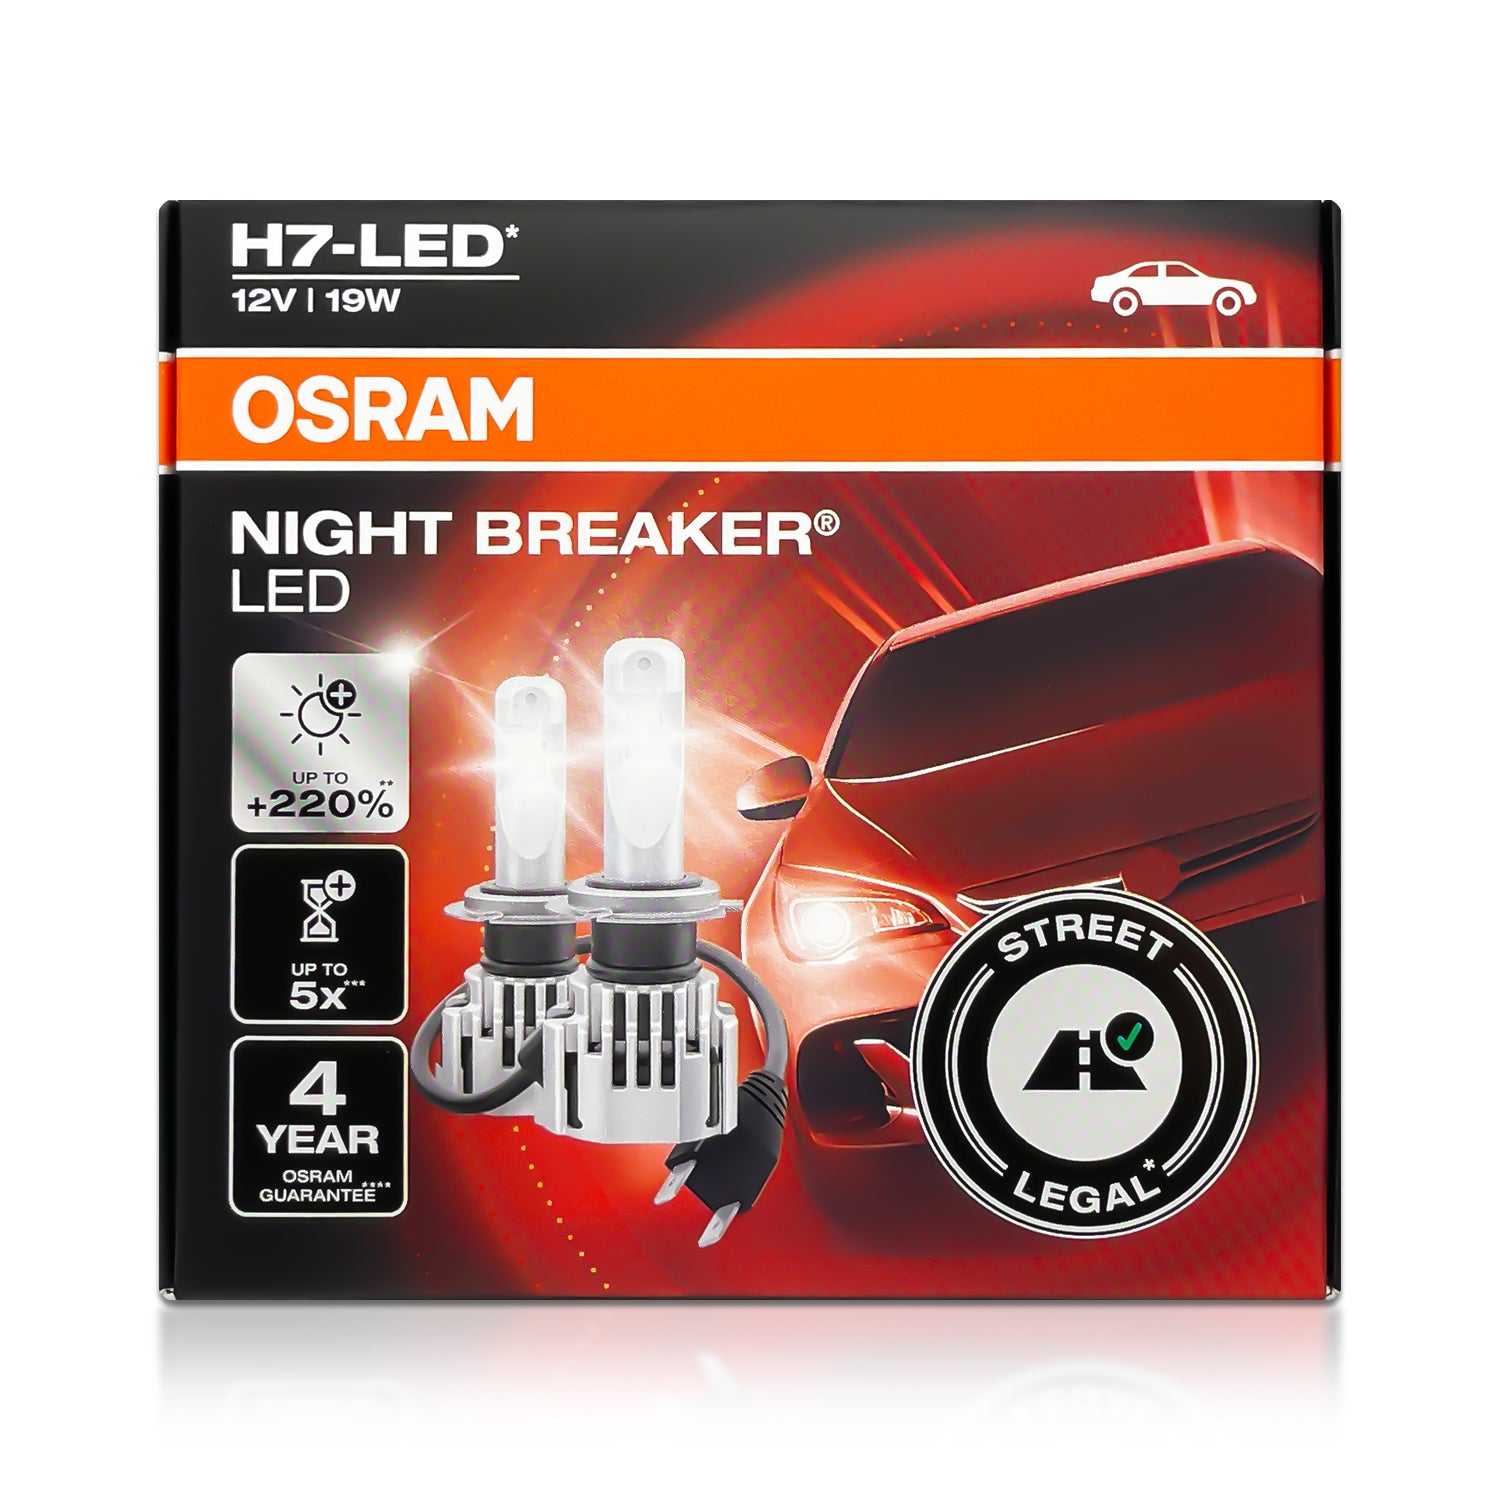 OSRAM NIGHT BREAKER LED H7-LED 64210DWNB Bulb, spotlight